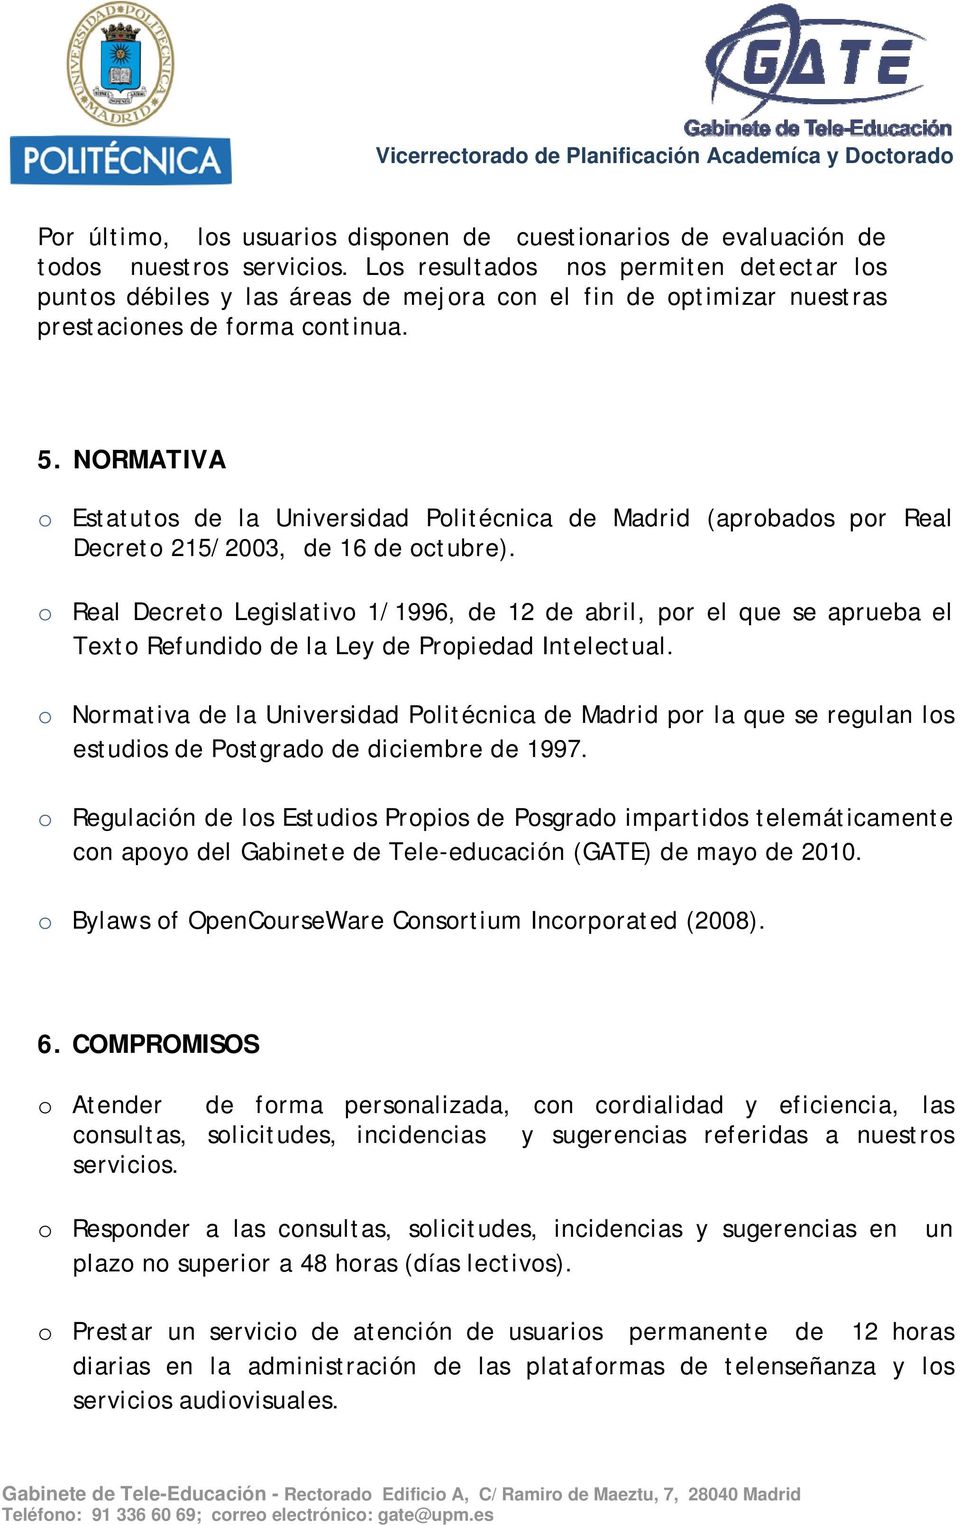 NORMATIVA o Estatutos de la Universidad Politécnica de Madrid (aprobados por Real Decreto 215/2003, de 16 de octubre).